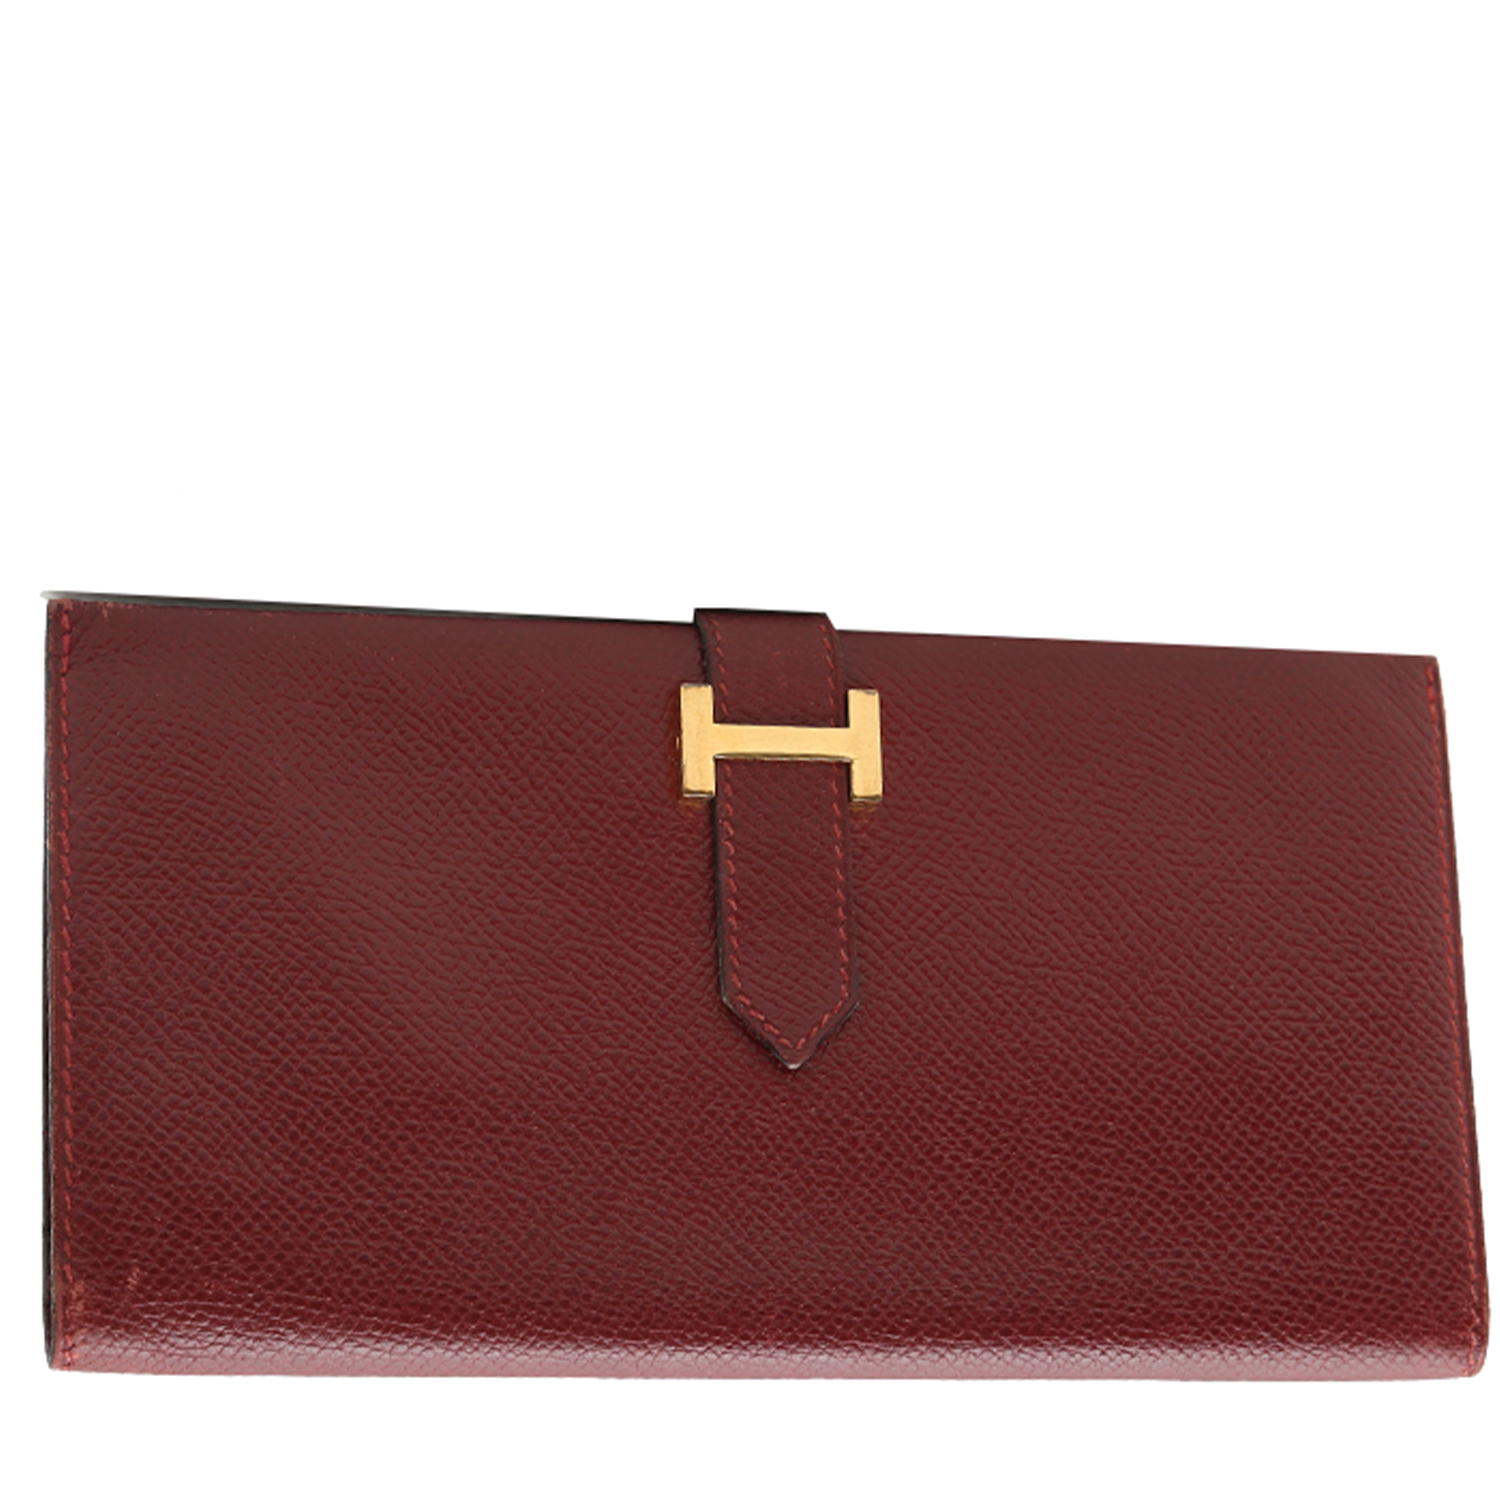 Hermès Béarn Wallet 397784, tjm heritage flap crossover bag